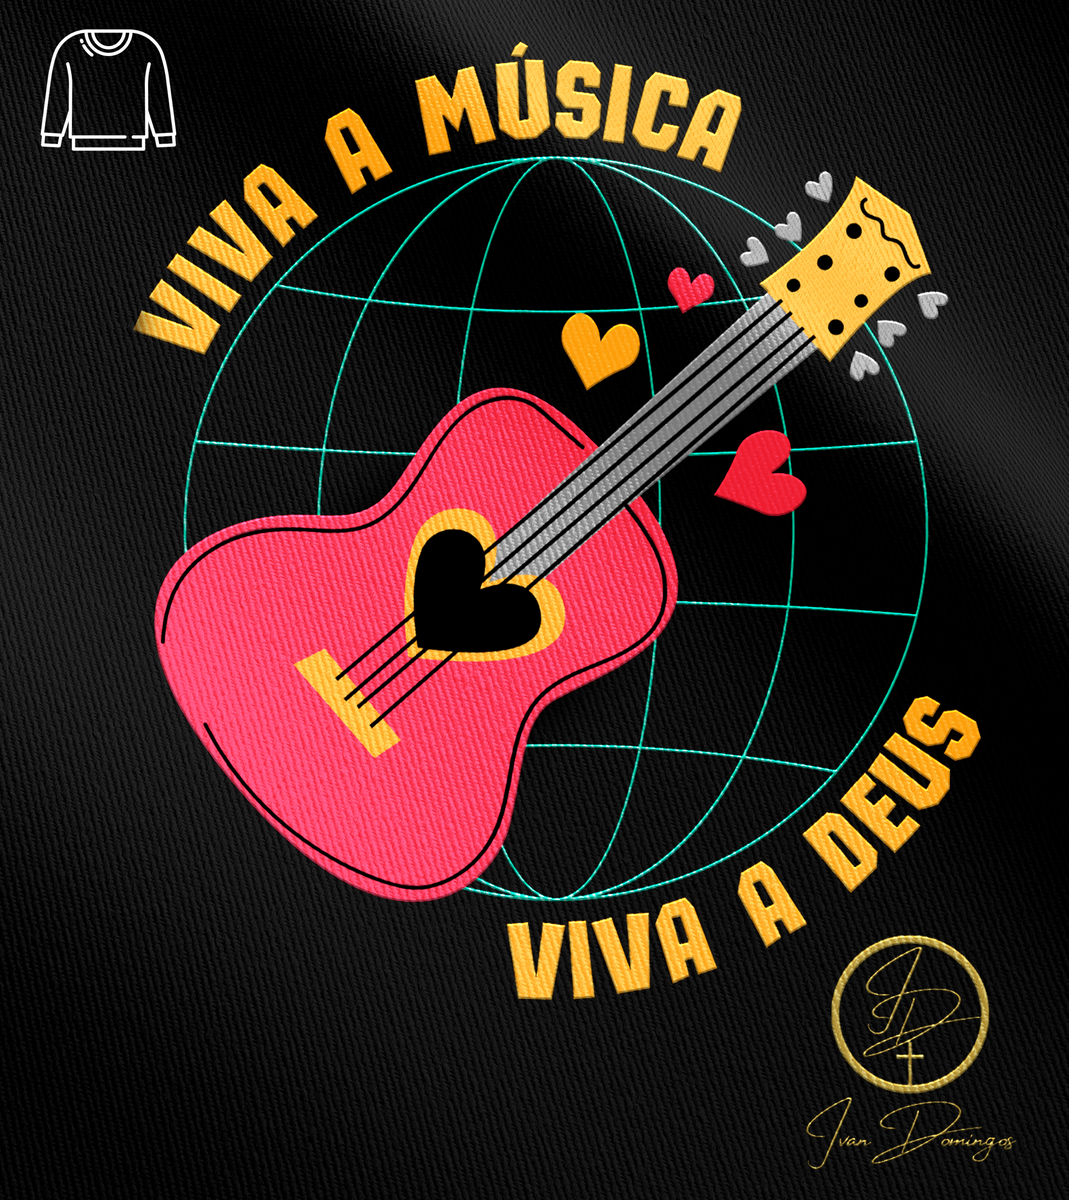 Nome do produto: Blusão Ivan Domingos - Viva a música